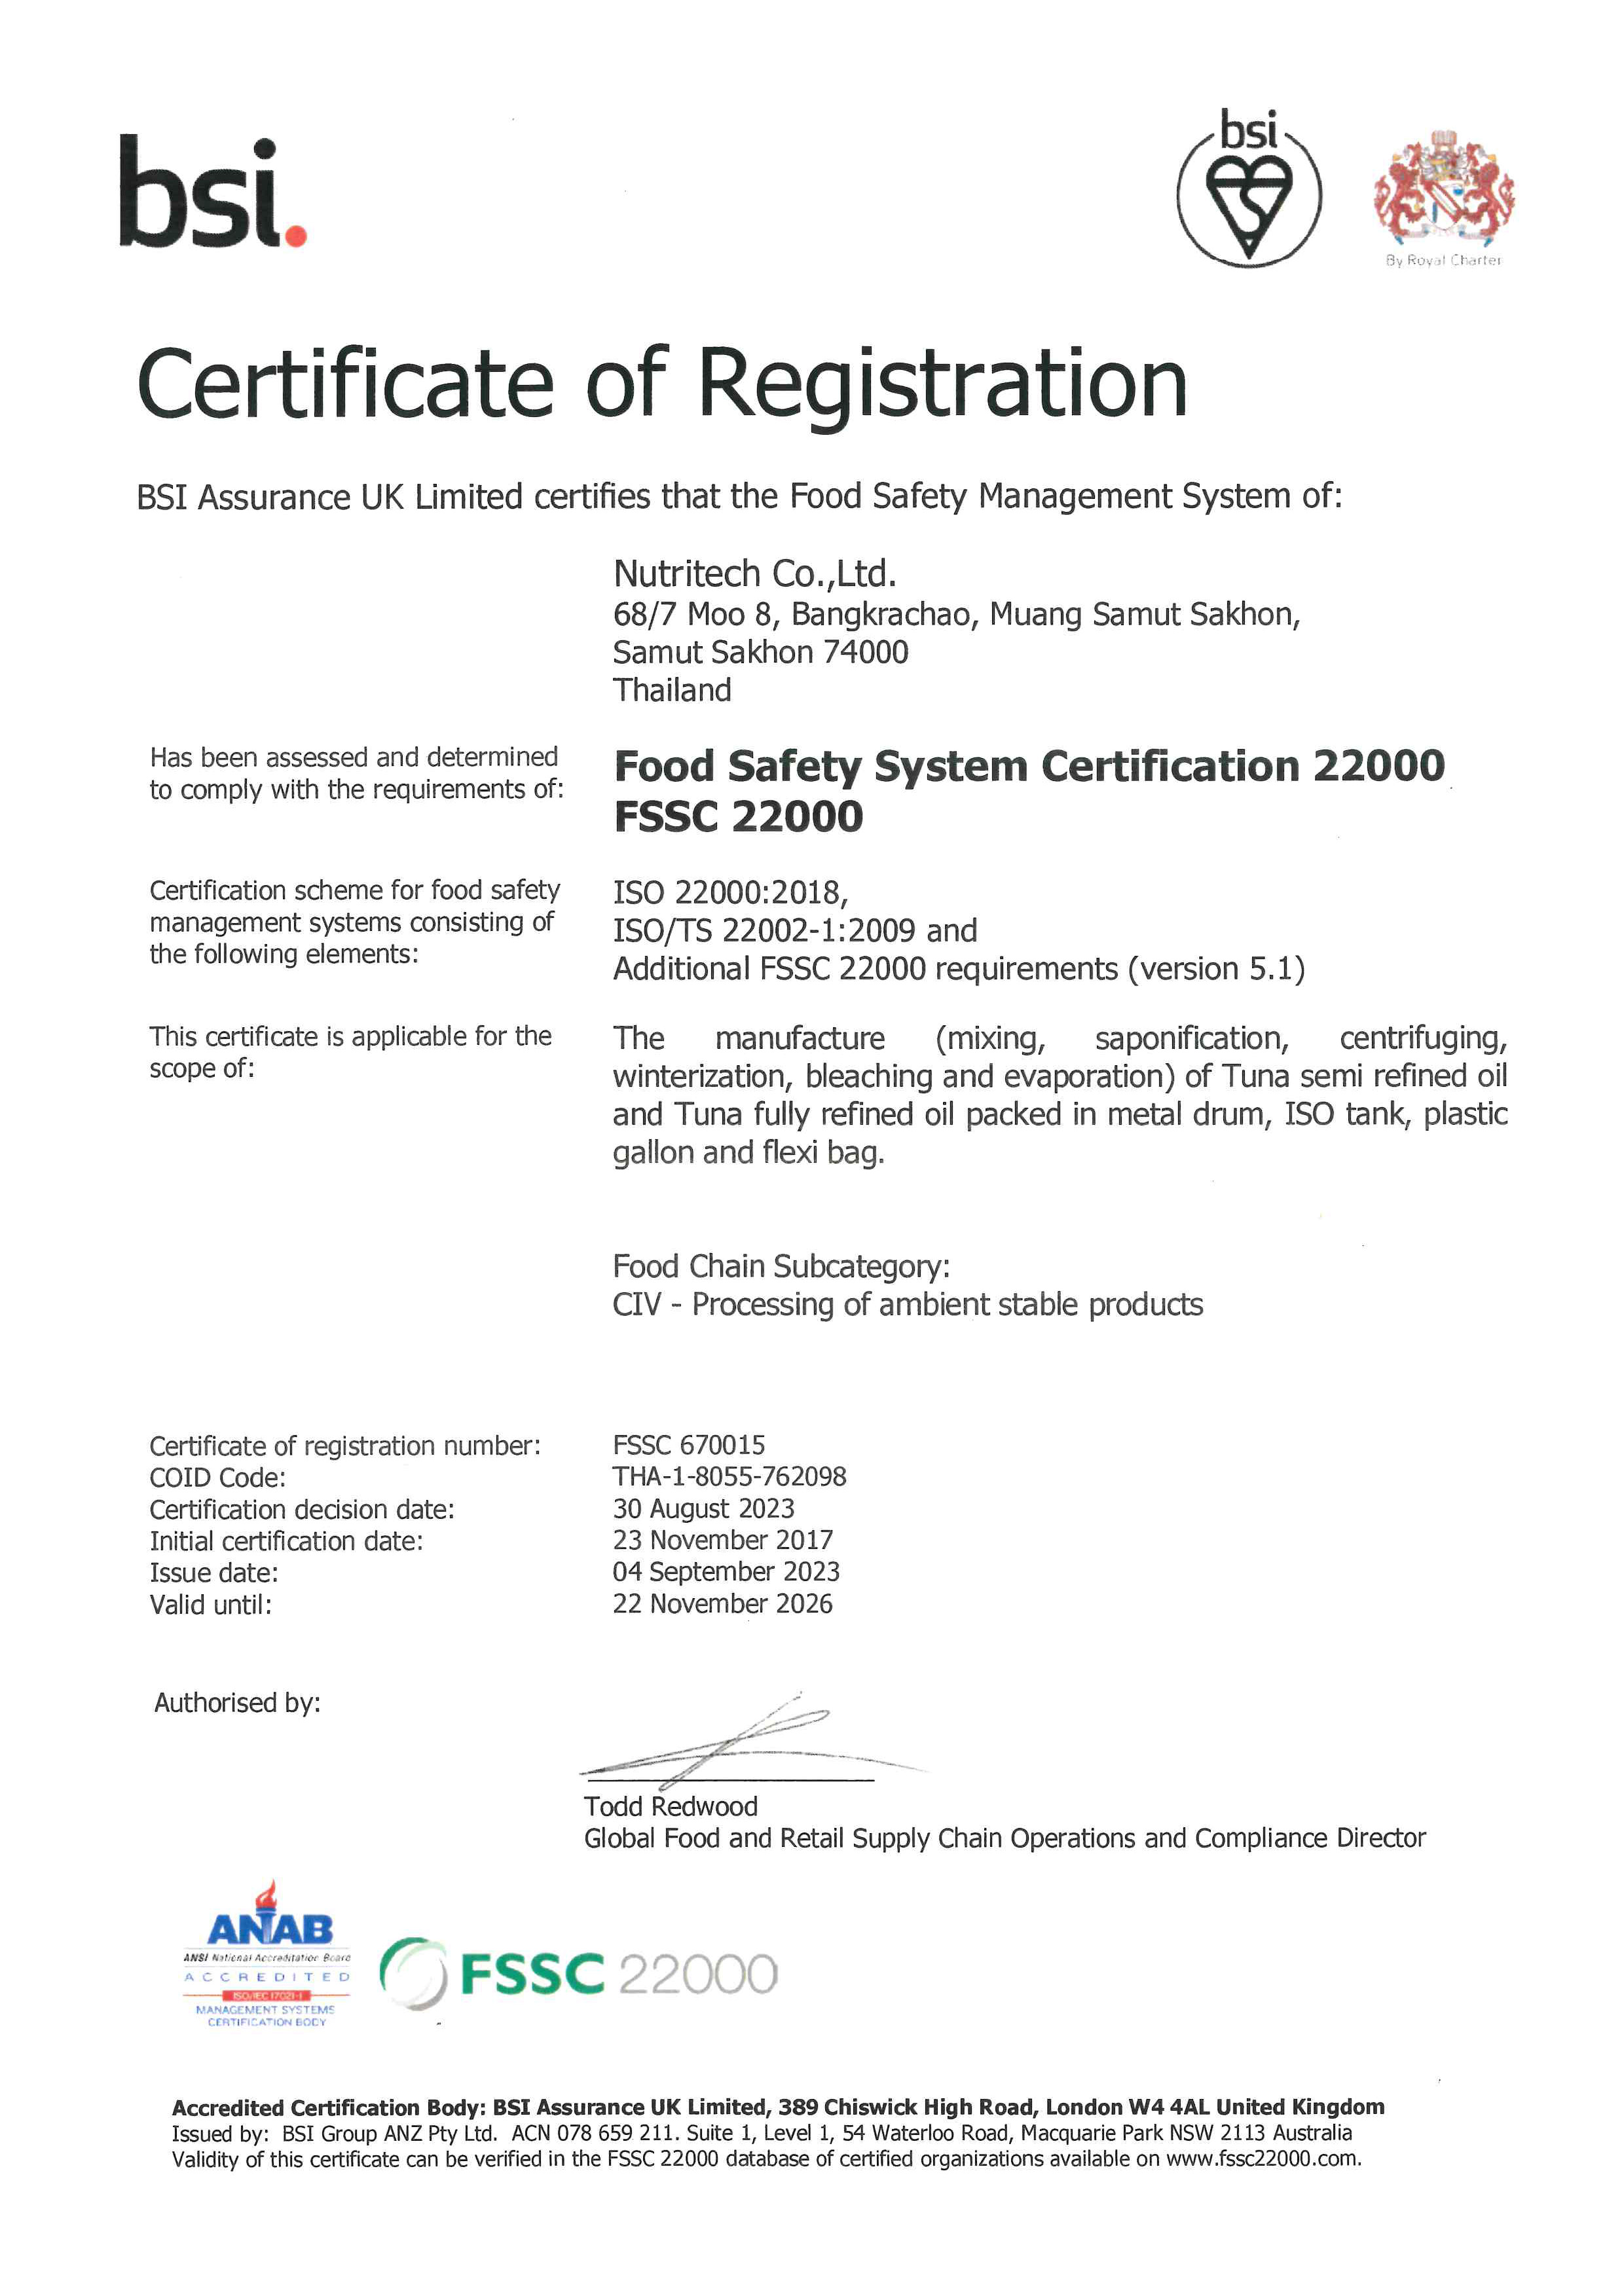 fssc 22000 approval certification